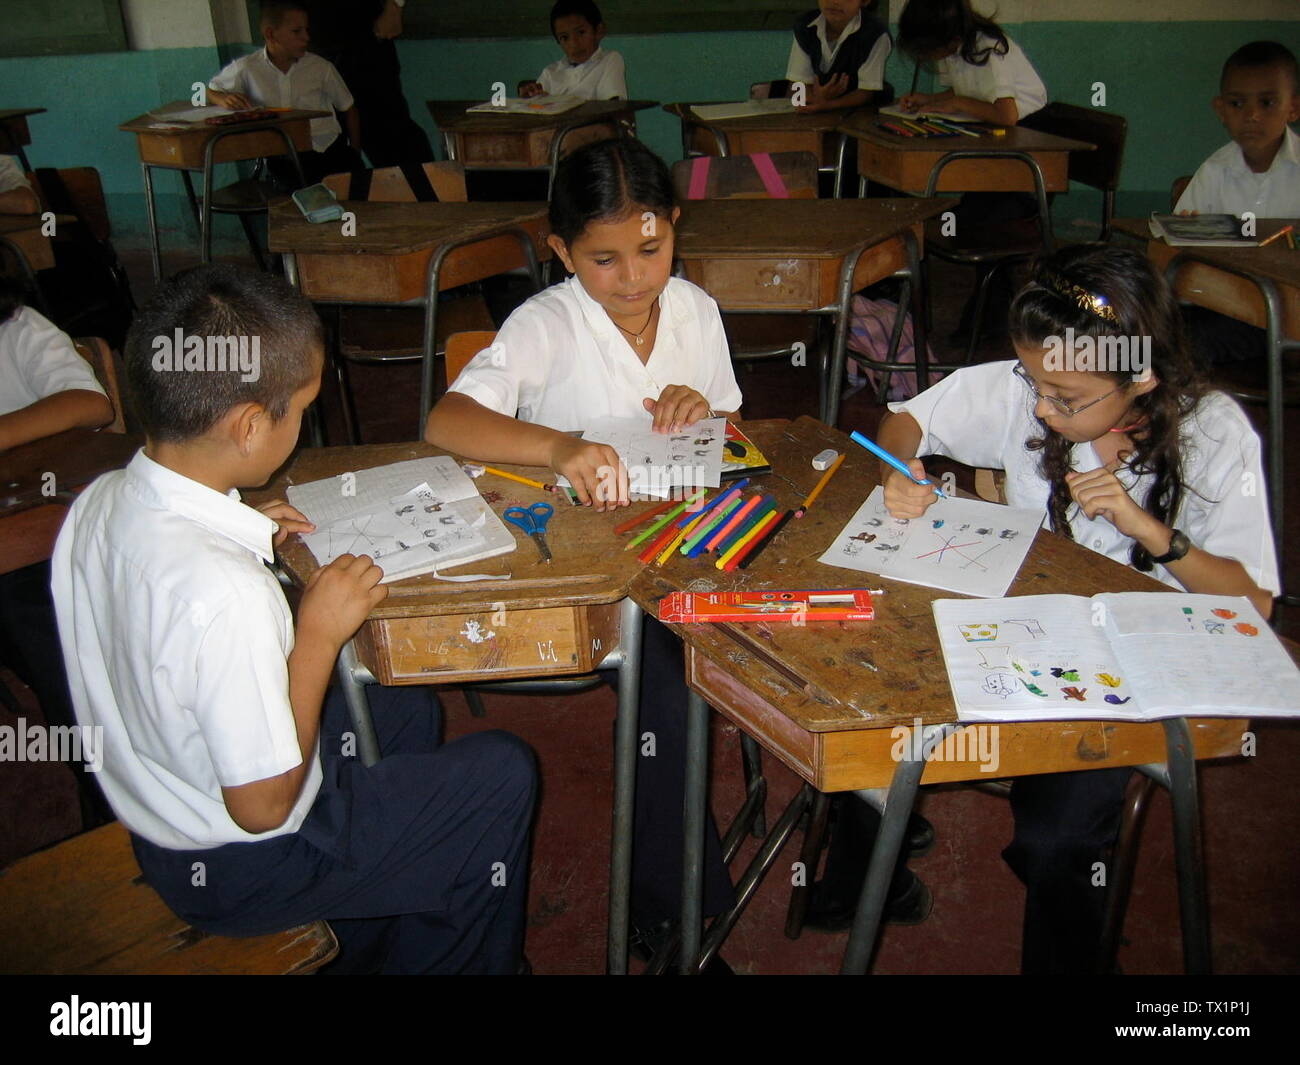 Second graders working in Centro Educativo Linda Vista de Santa Rosa, Guanacaste. EspaÃ±ol: Estudiantes en el segundo grado estudian en el Centro Educativo Linda Vista de Santa Rosa, Guanacaste.; 6 March 2008; enwp; en:User:Mscnln; Stock Photo